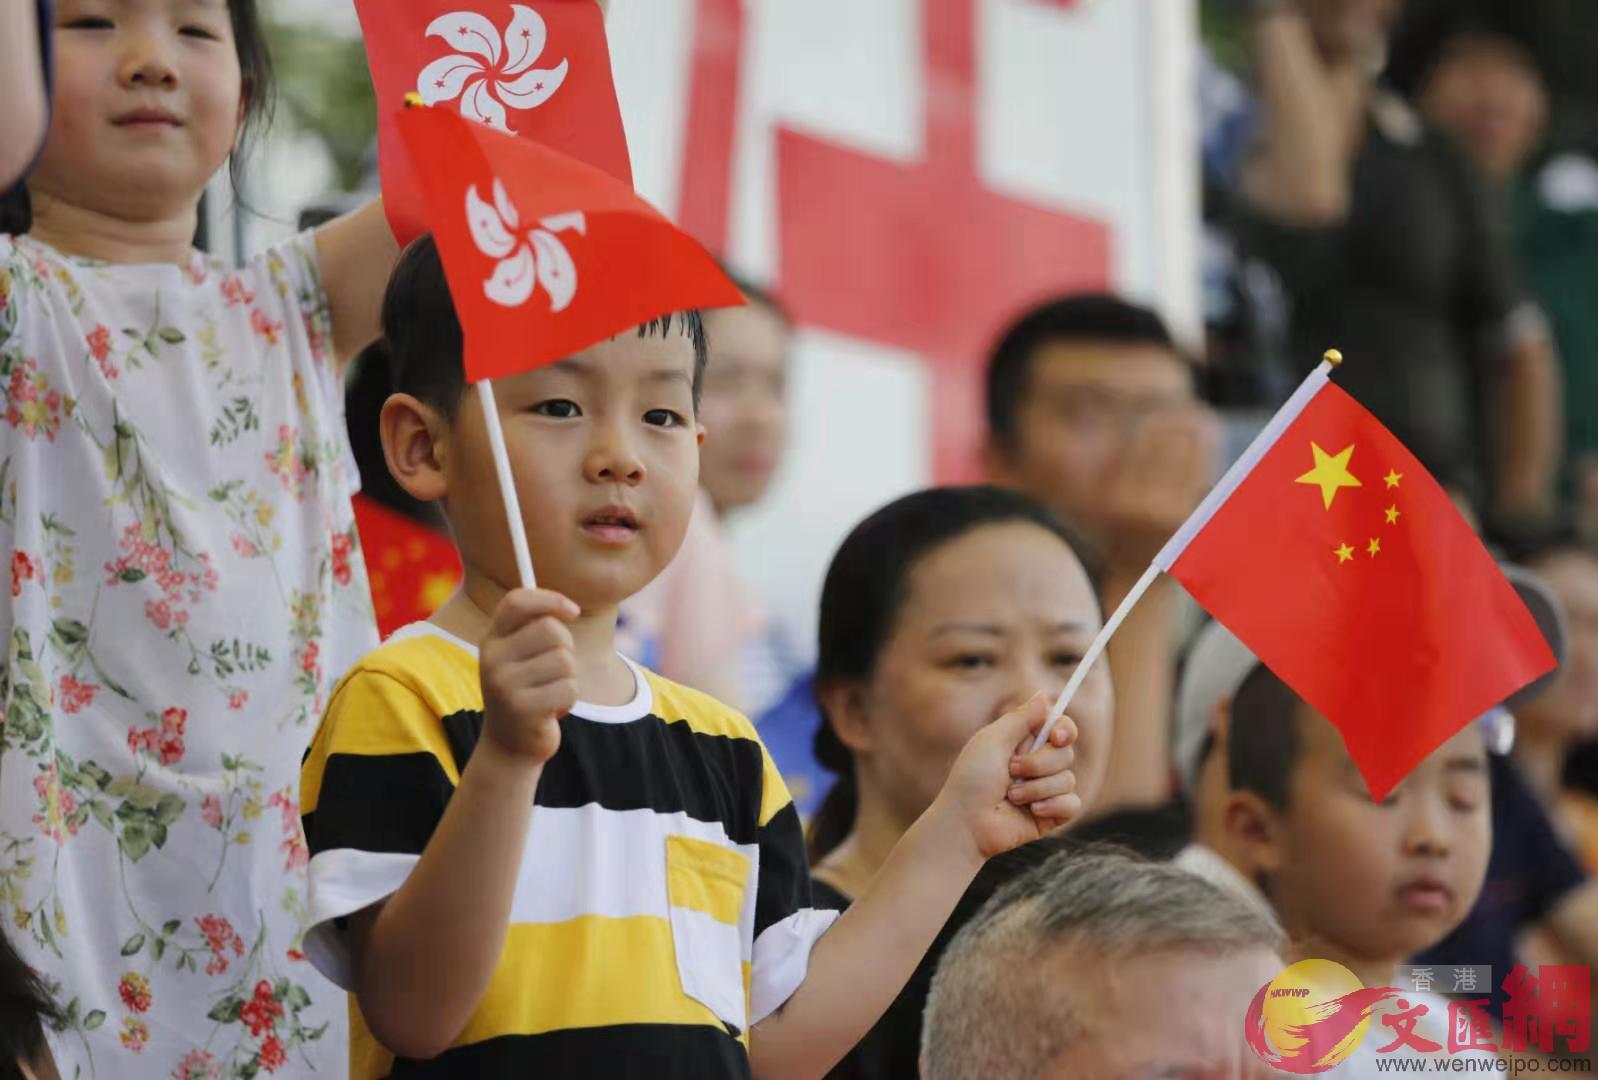 有市民建議軍營多向青年學生開放A作為愛國教育的一部分A讓他們深入了解國家與香港的關係]記者 黃洋港 攝^